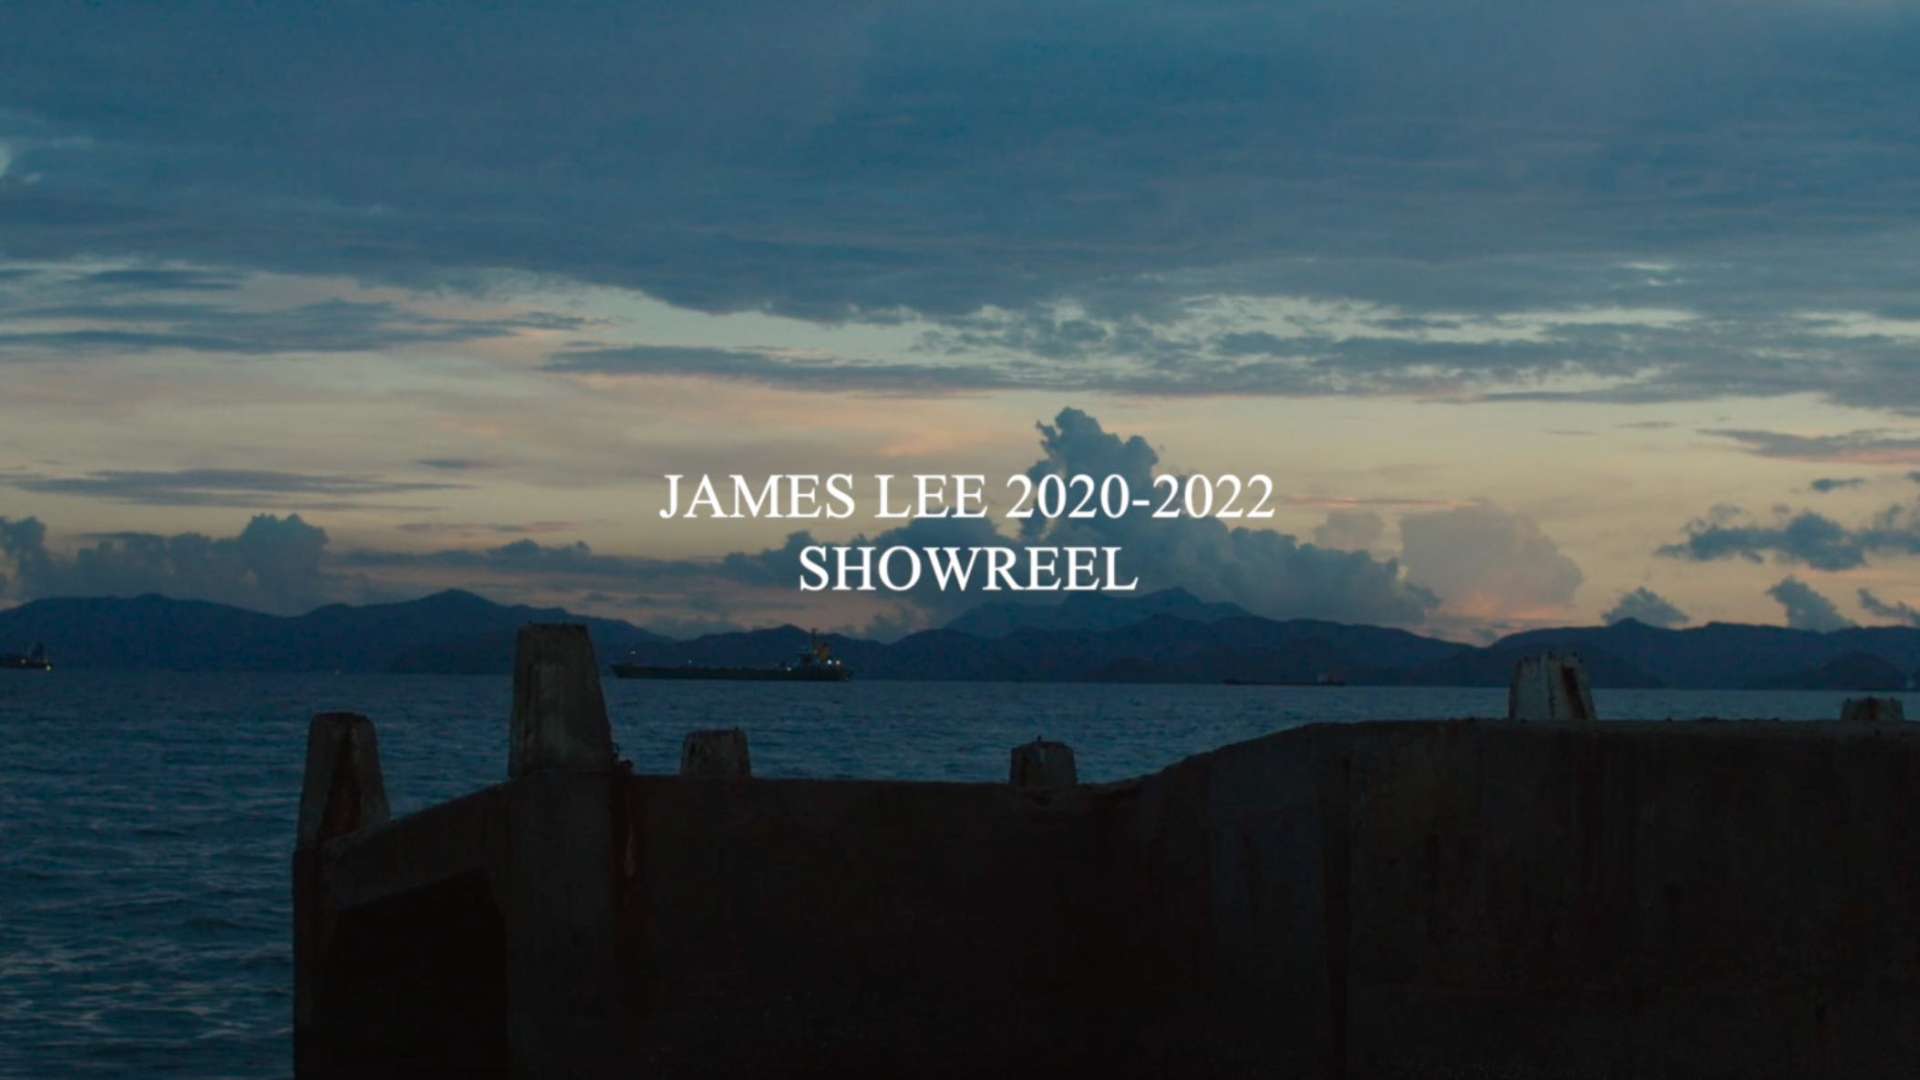 James Lee 2020-2022 Showreel 摄影作品集